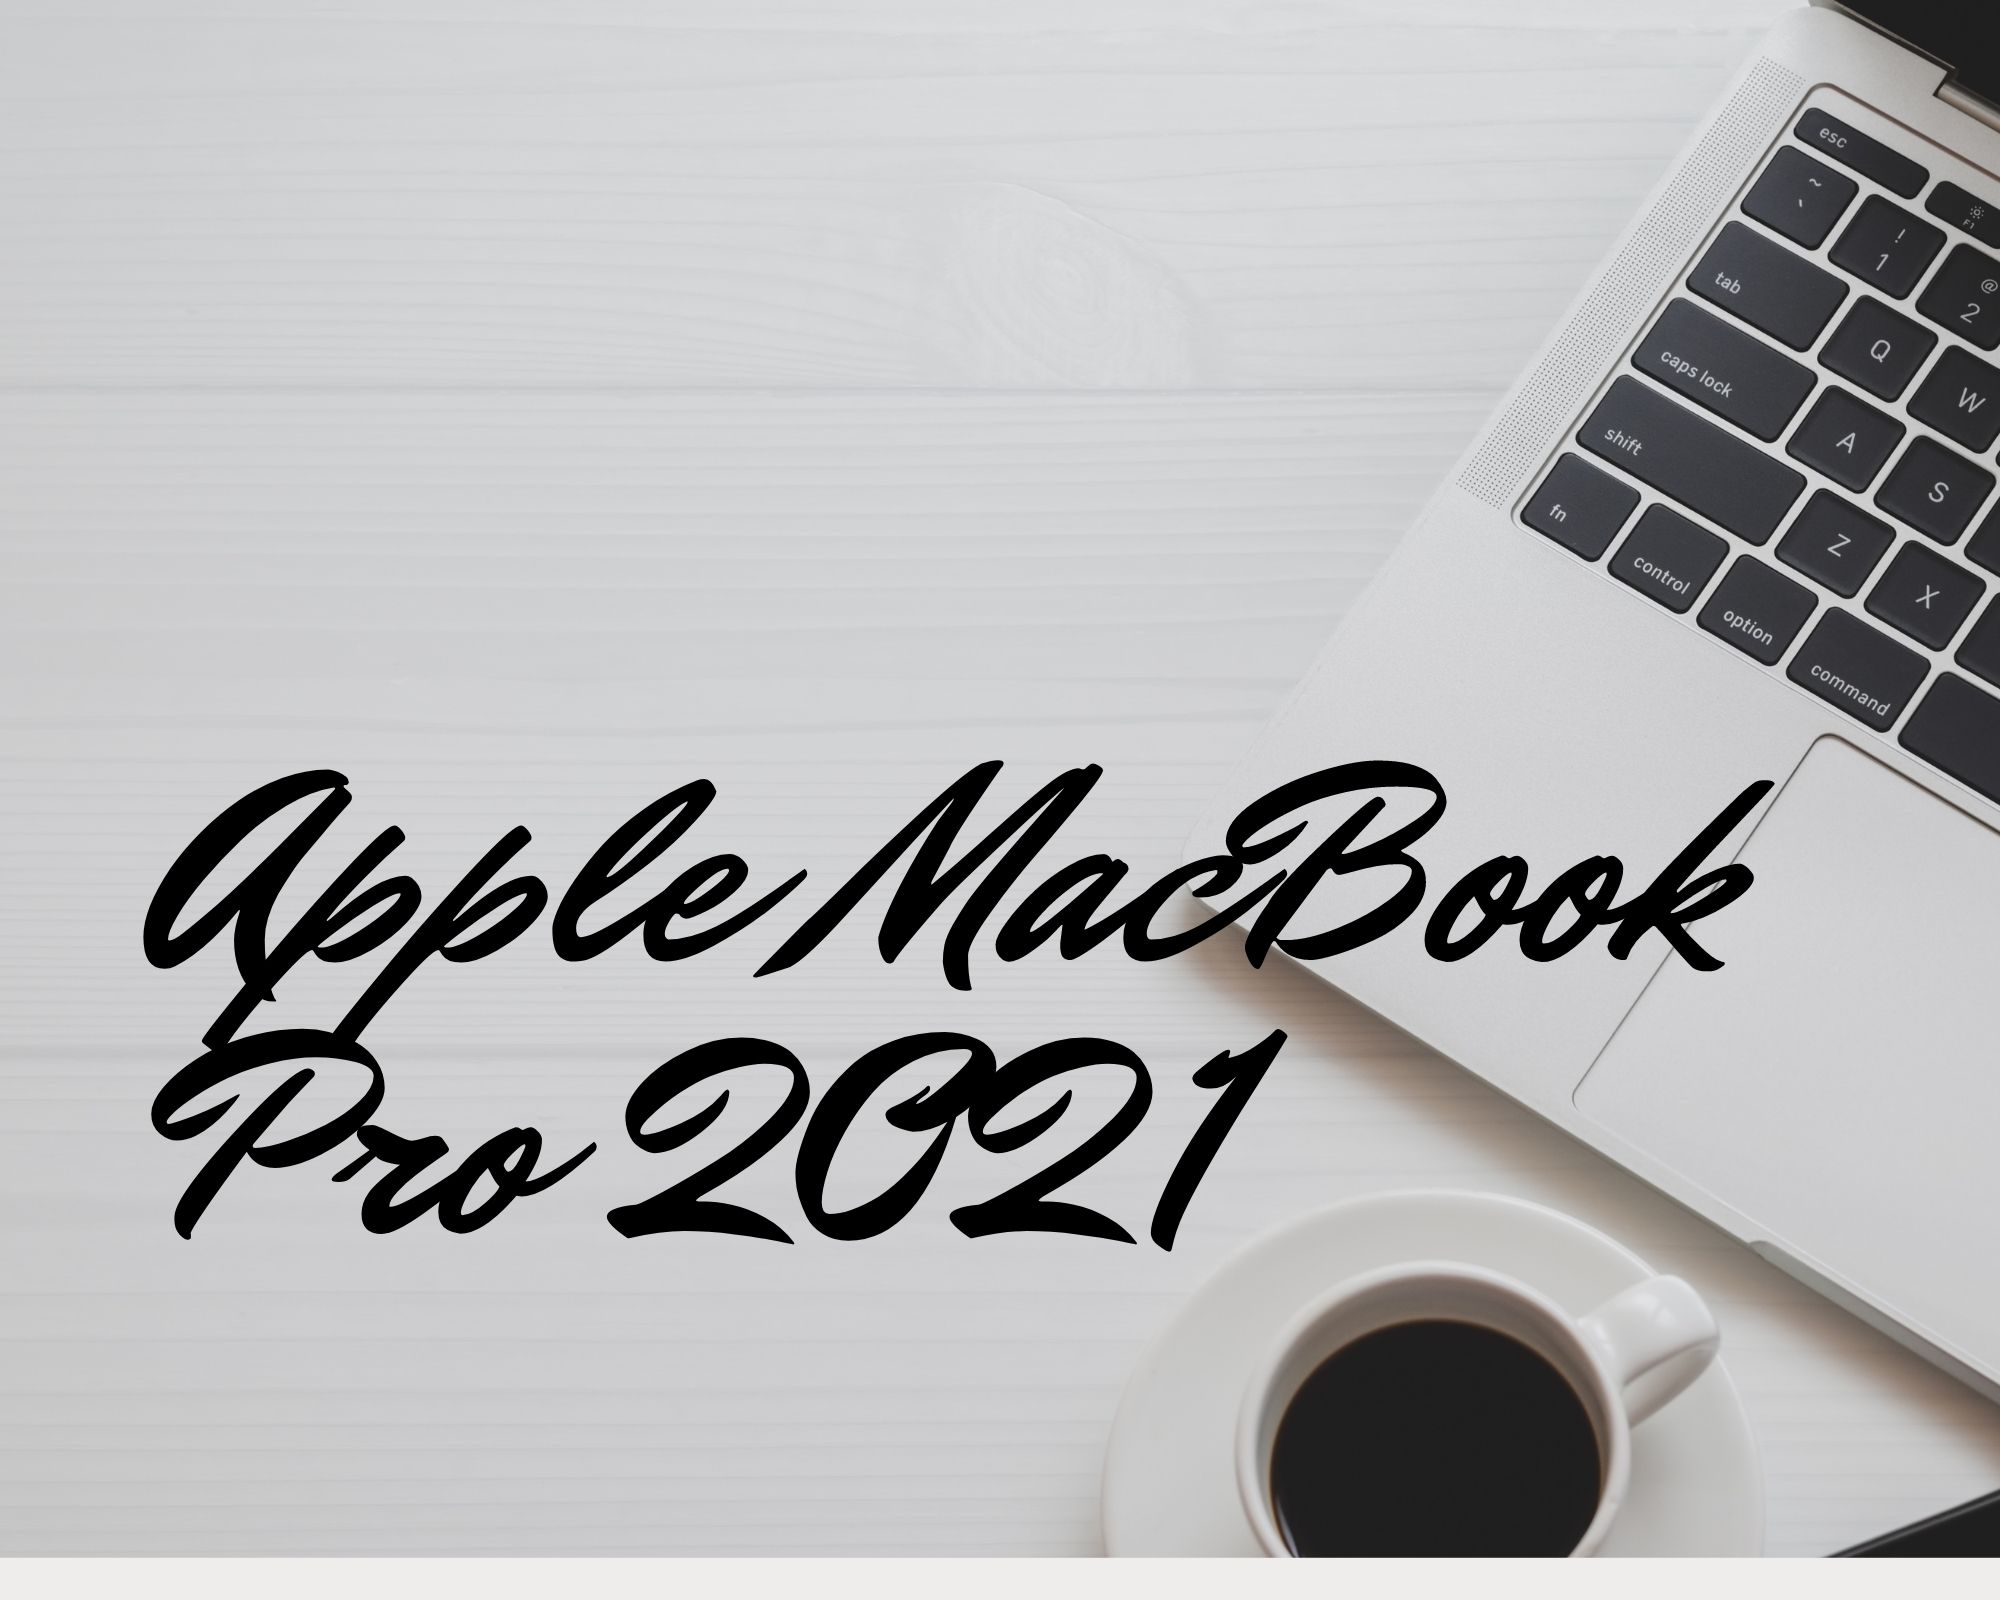 apple macbook pro 2021